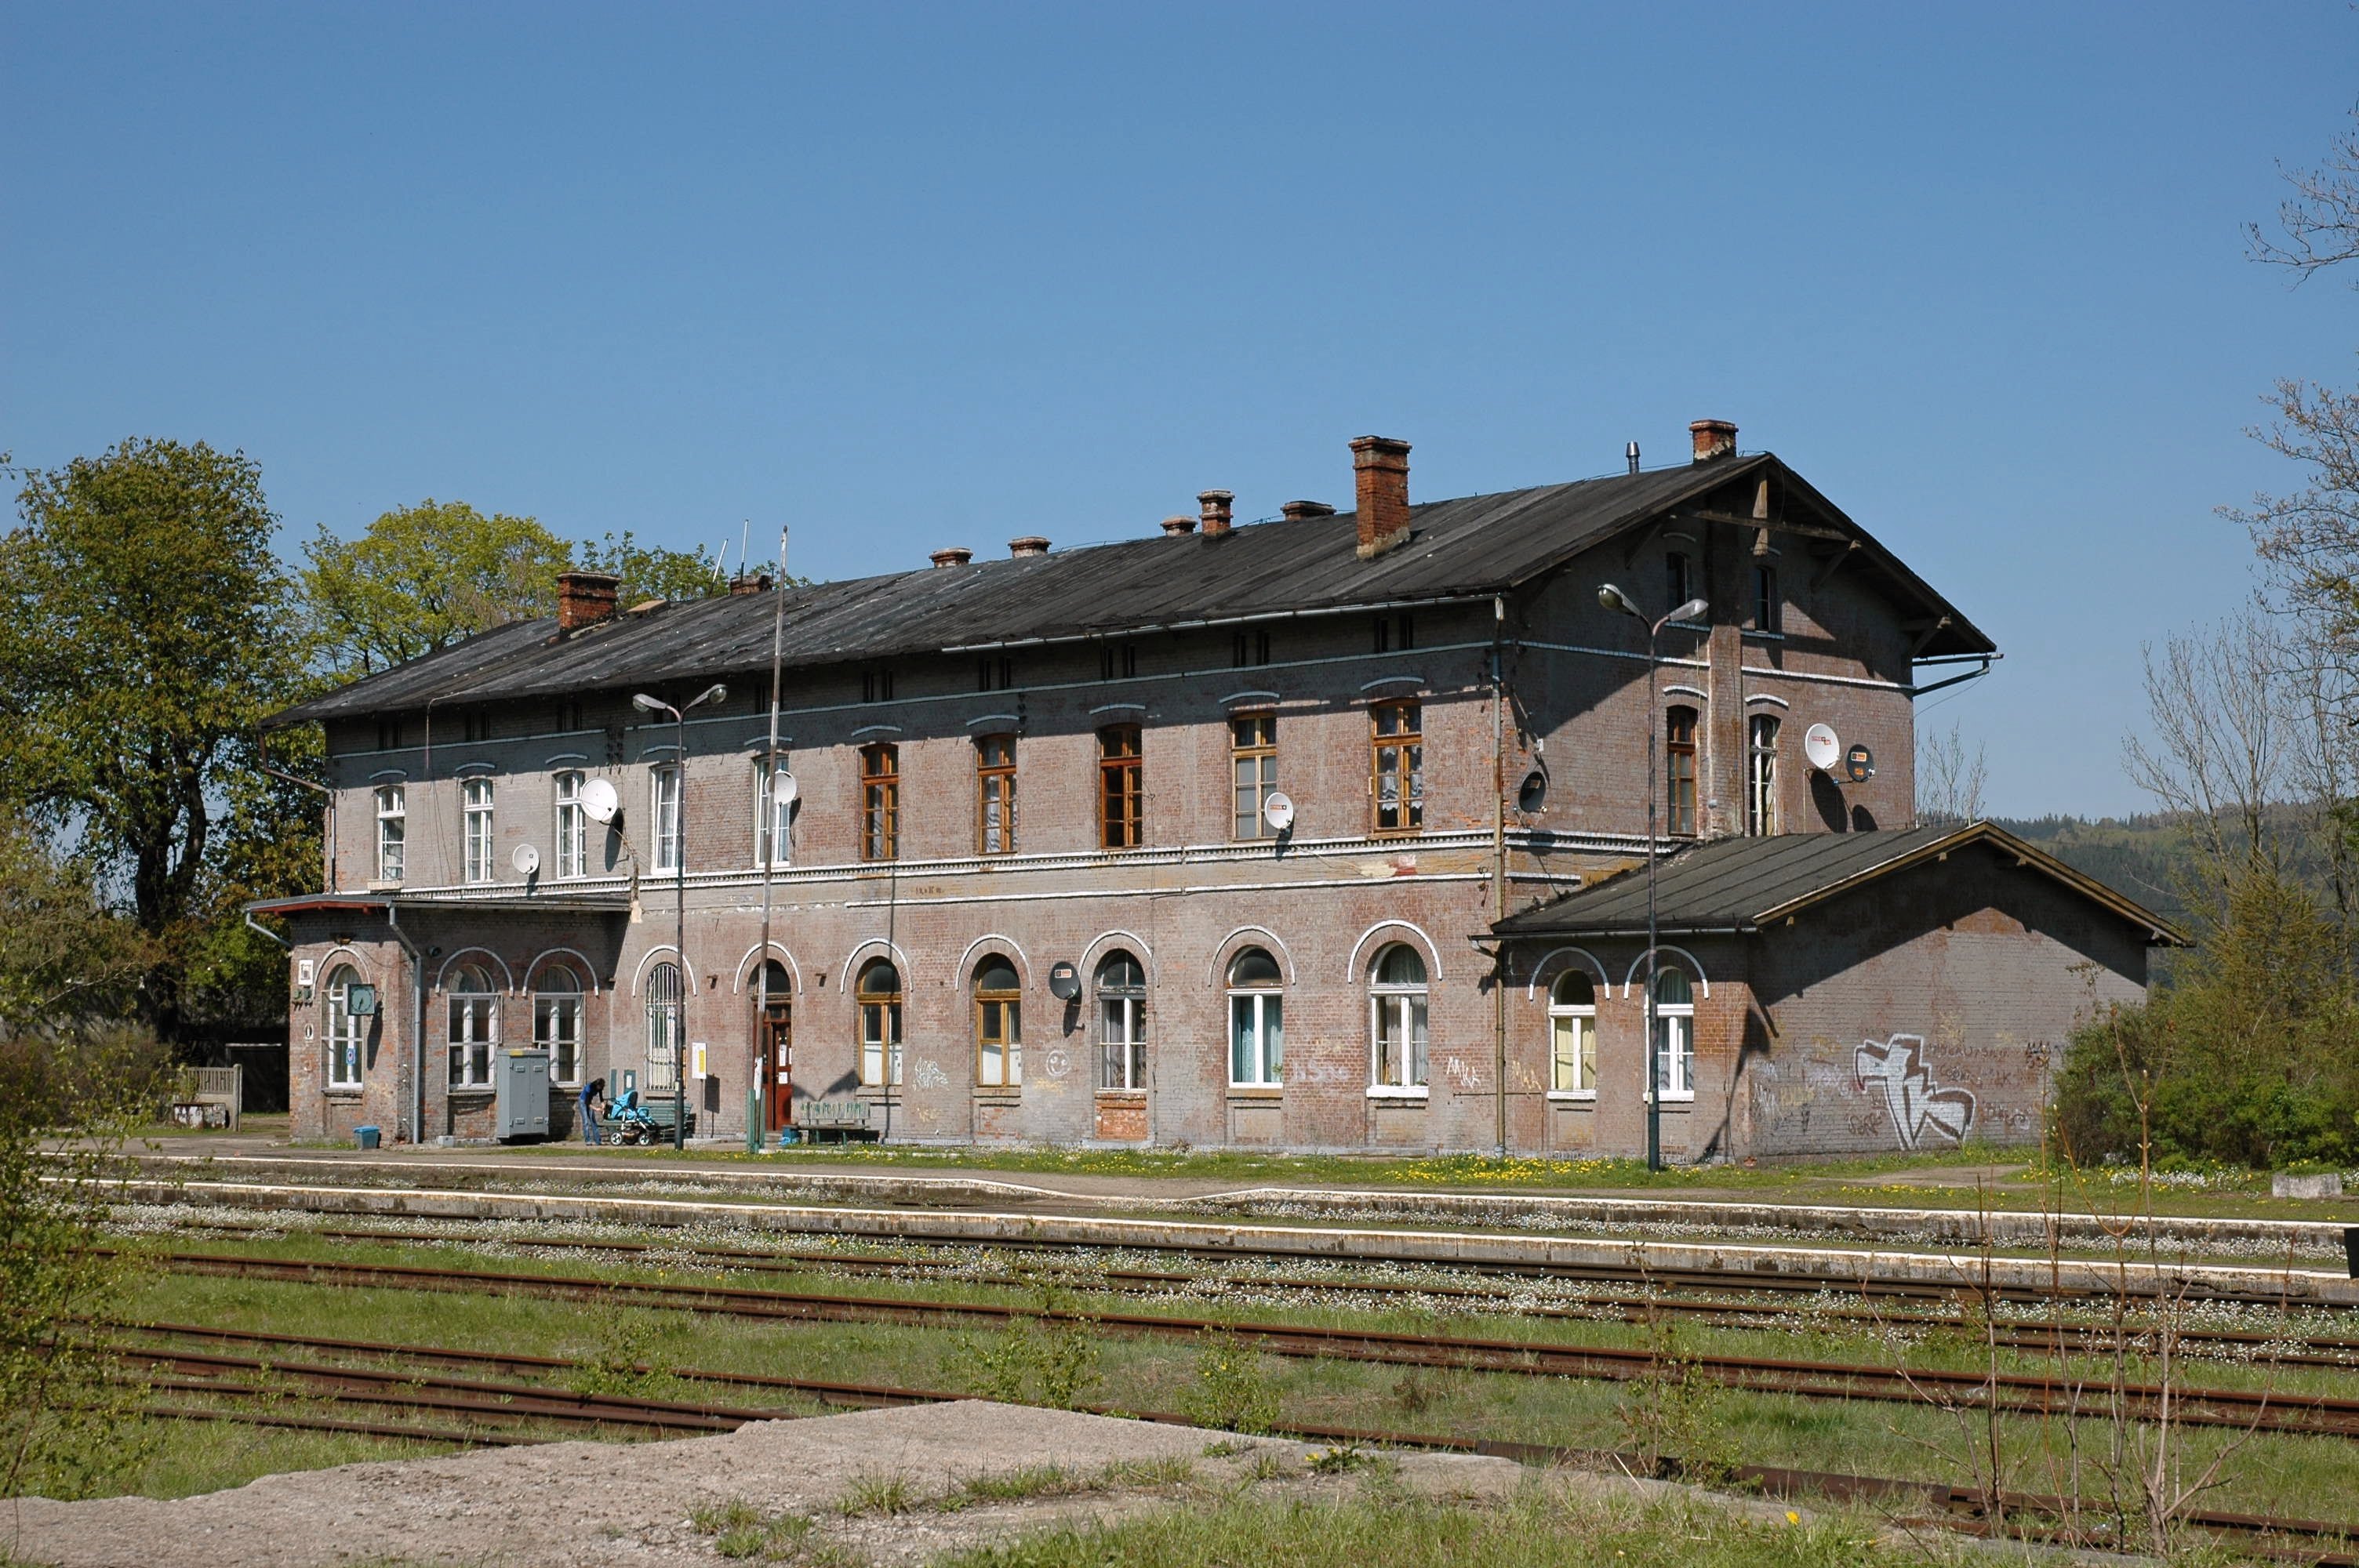 Głuszyca station